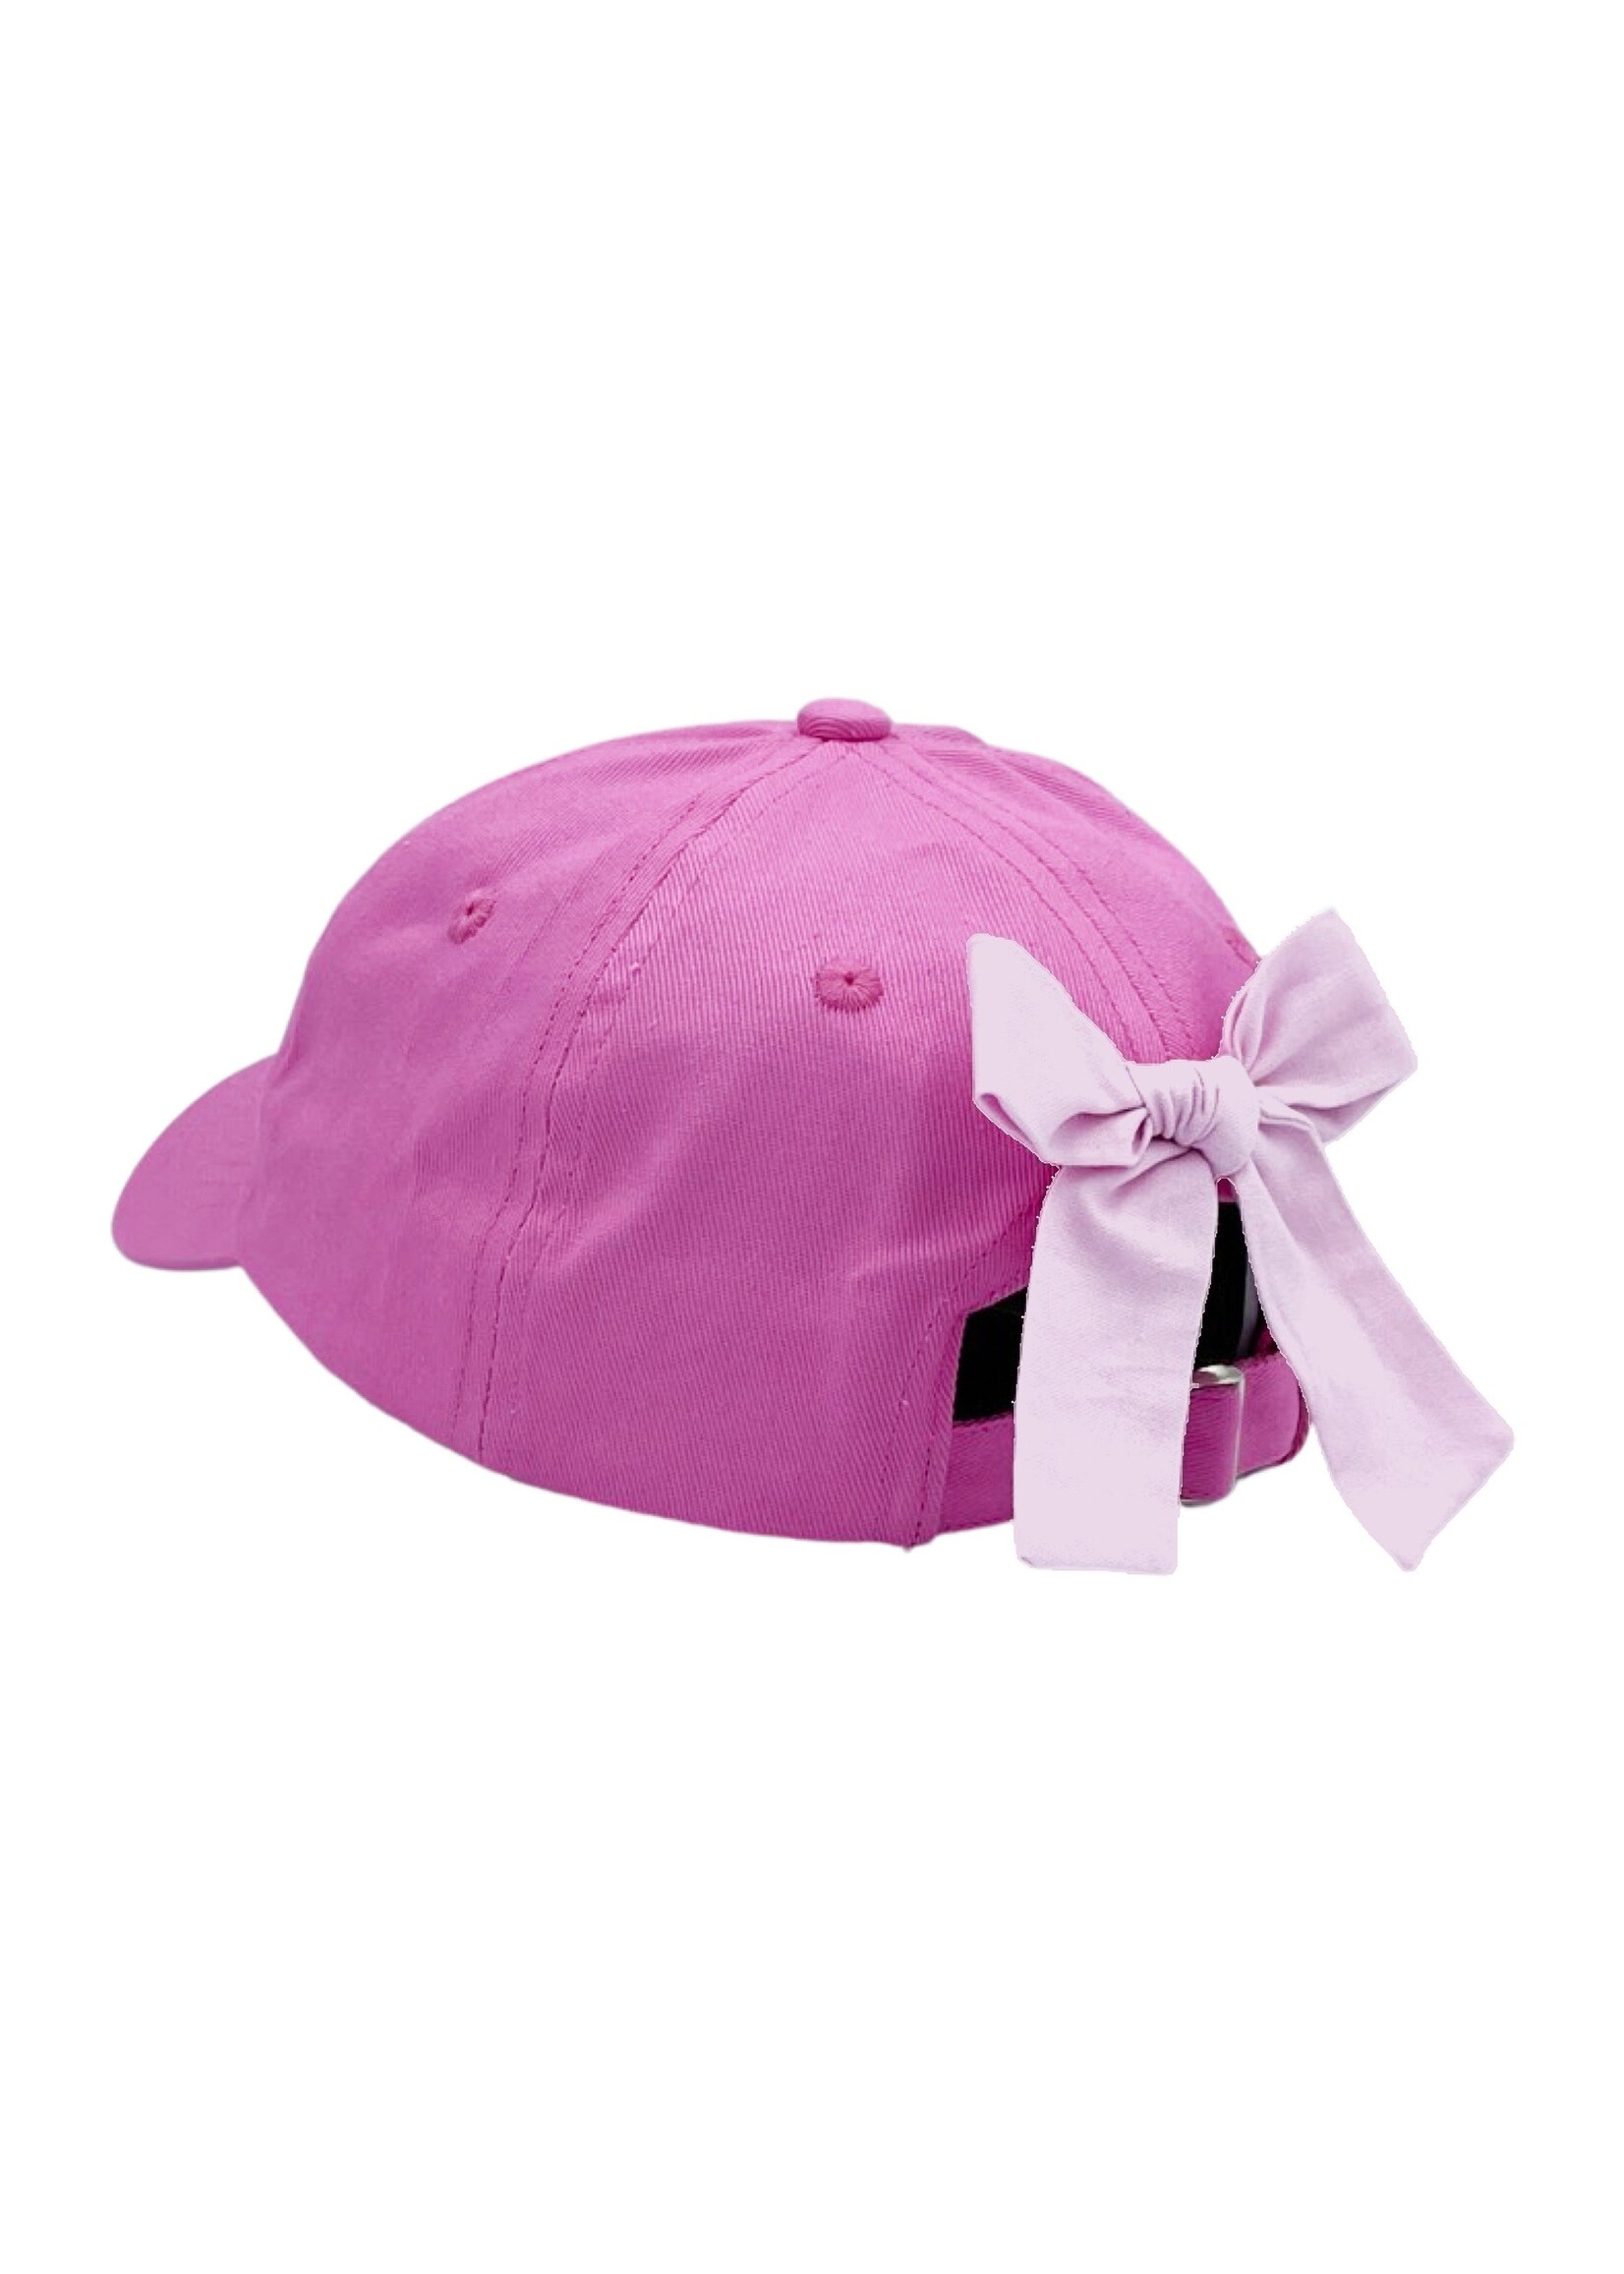 Bits & Bows Bits & Bows Ballet White Hat - Pink Hat